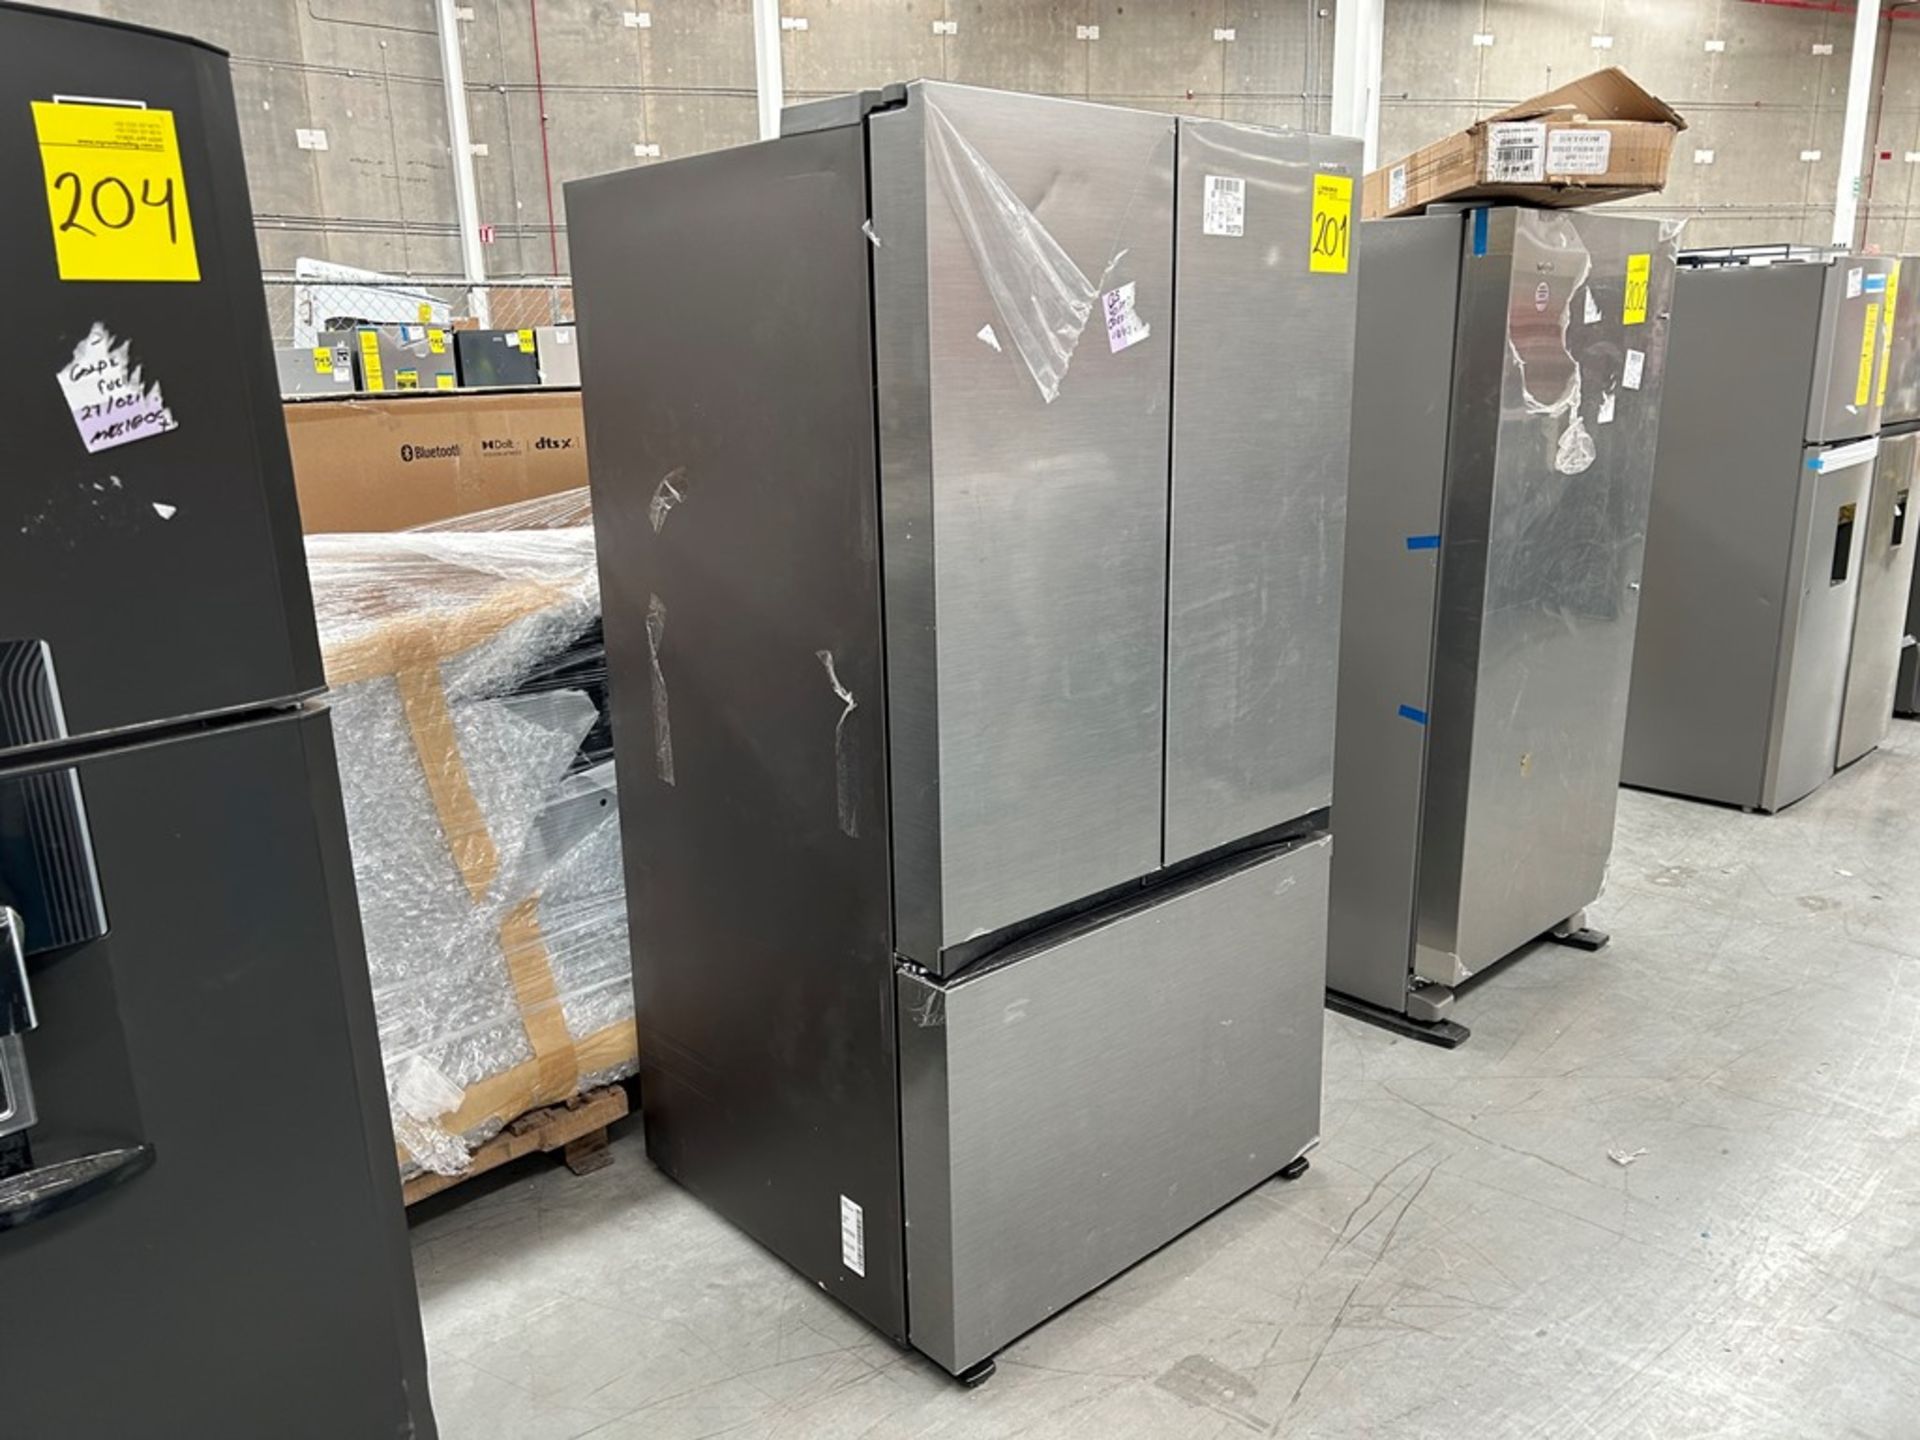 1 refrigerador Marca SAMSUNG, Modelo FR32CG5A10S9EM, Serie 01483D, Color GRIS (No se asegura su fu - Image 3 of 5